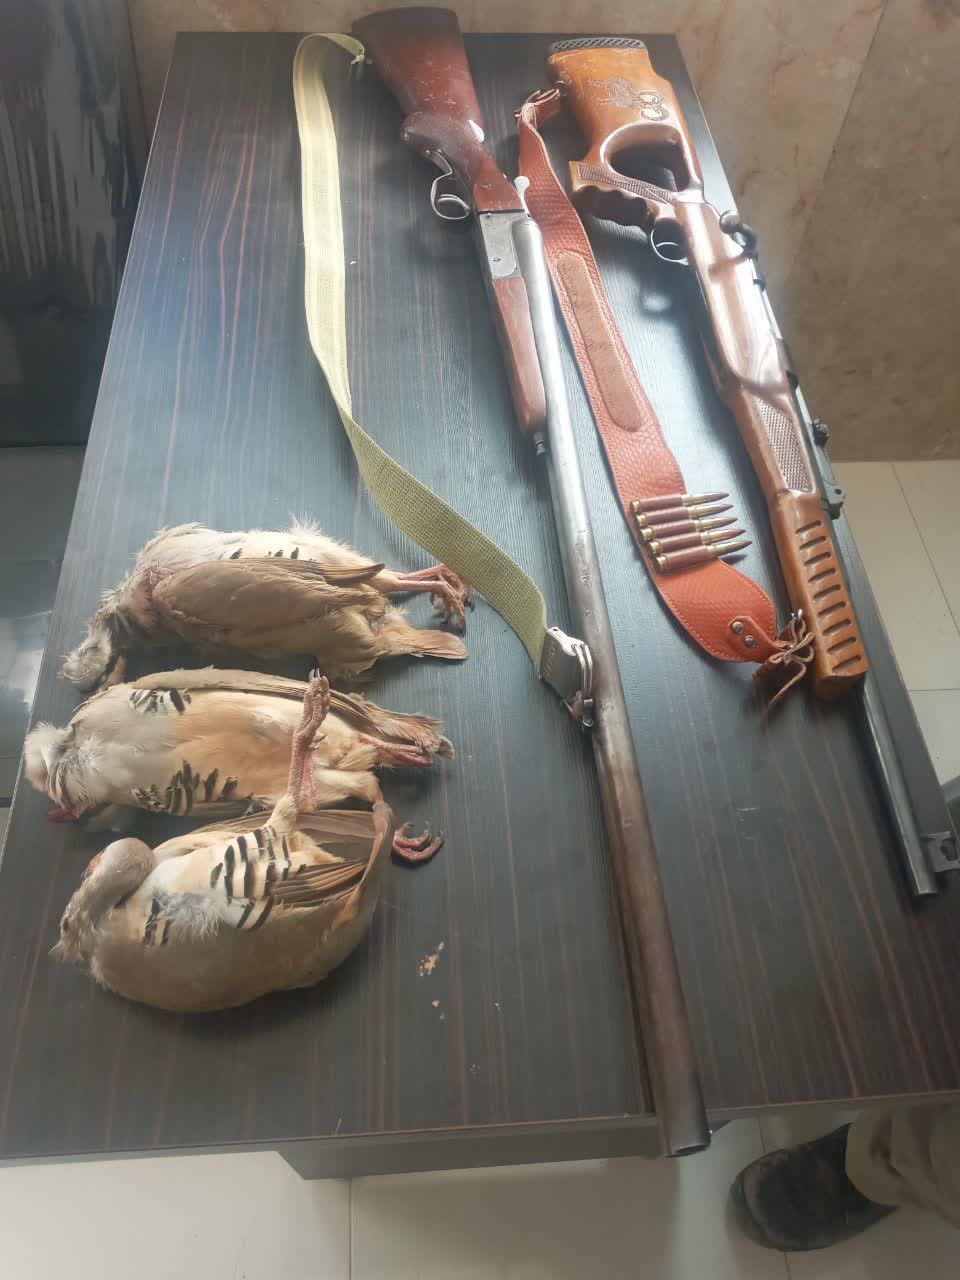 کشف وضبط دو قبضه اسلحه در شهرستان سرچهان